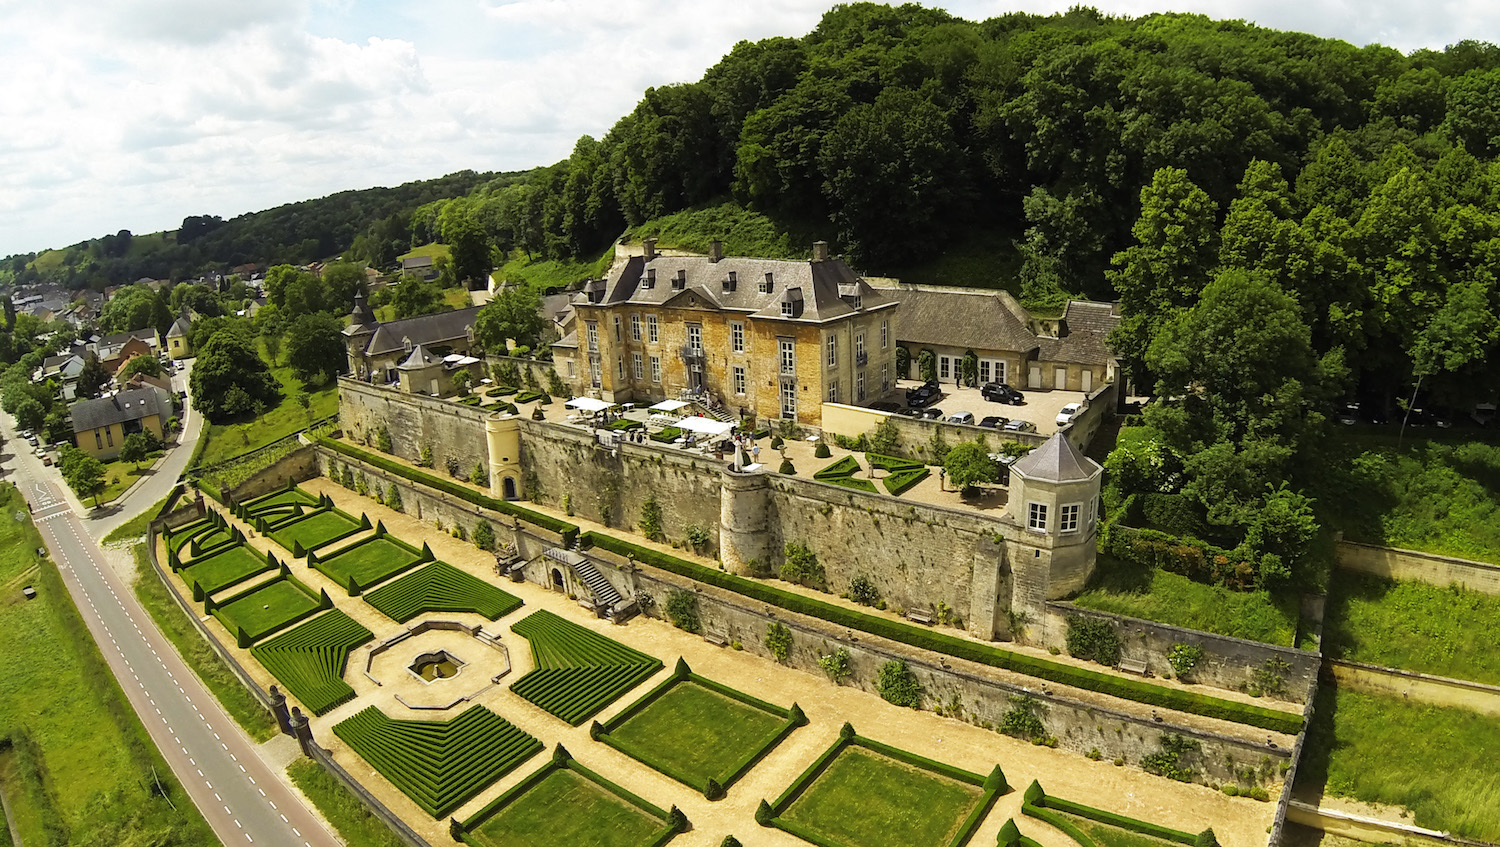 Chateau Neercanne